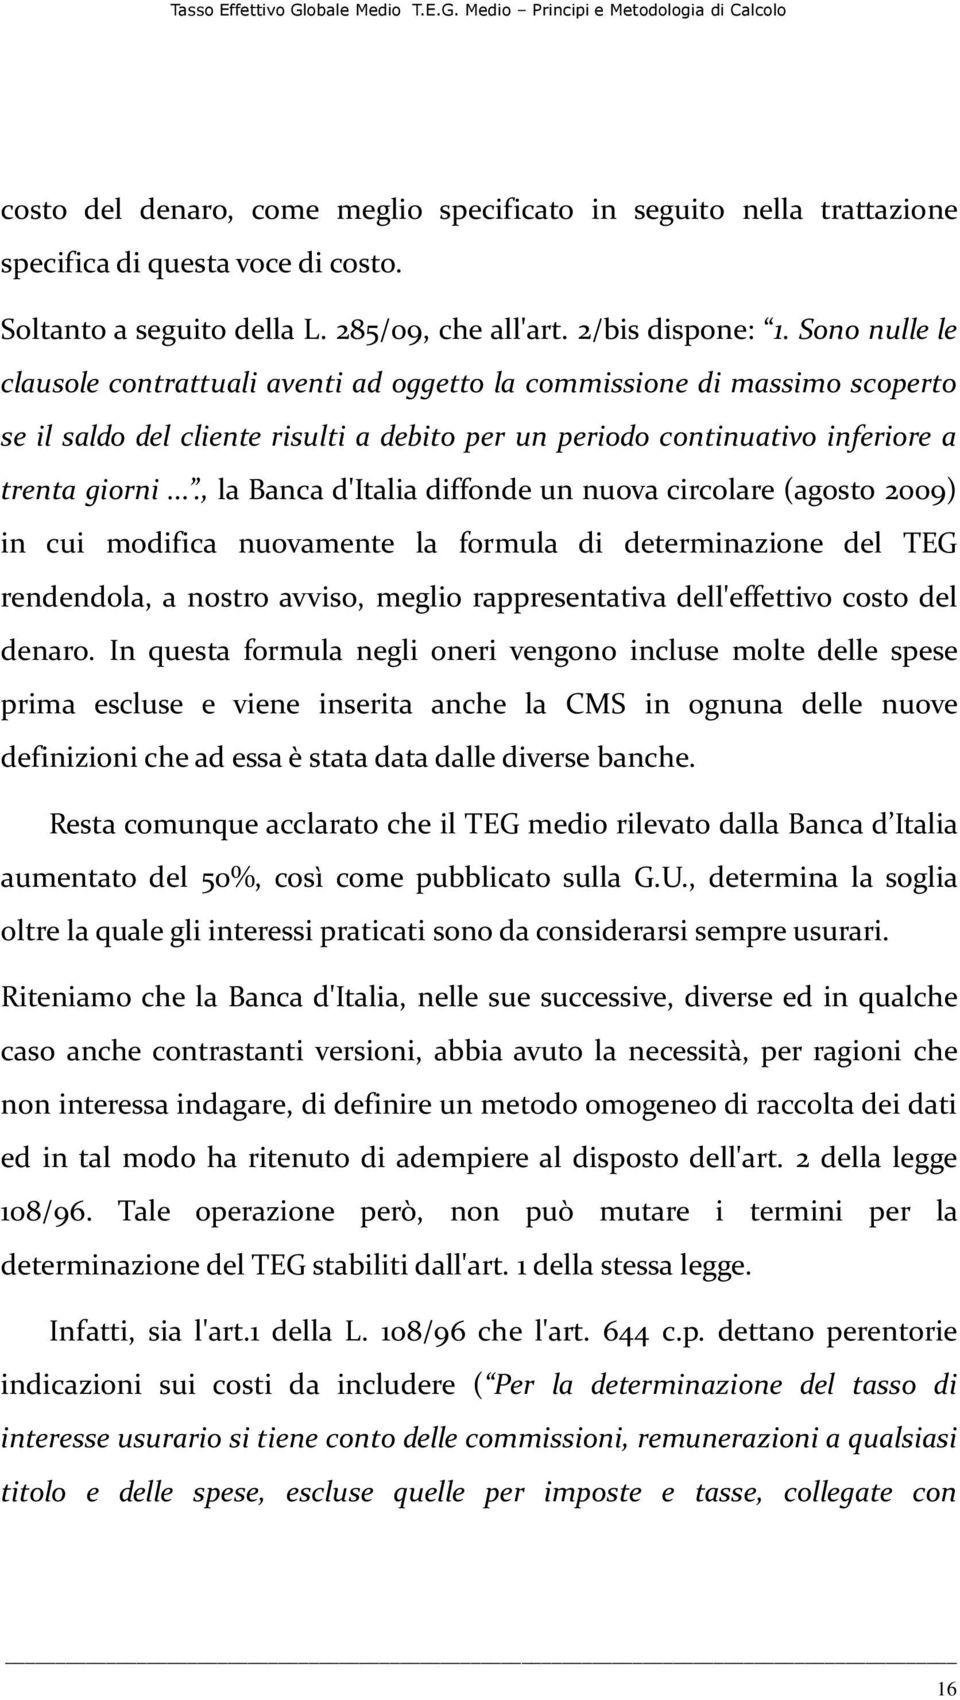 ..., la Banca d'italia diffonde un nuova circolare (agosto 2009) in cui modifica nuovamente la formula di determinazione del TEG rendendola, a nostro avviso, meglio rappresentativa dell'effettivo